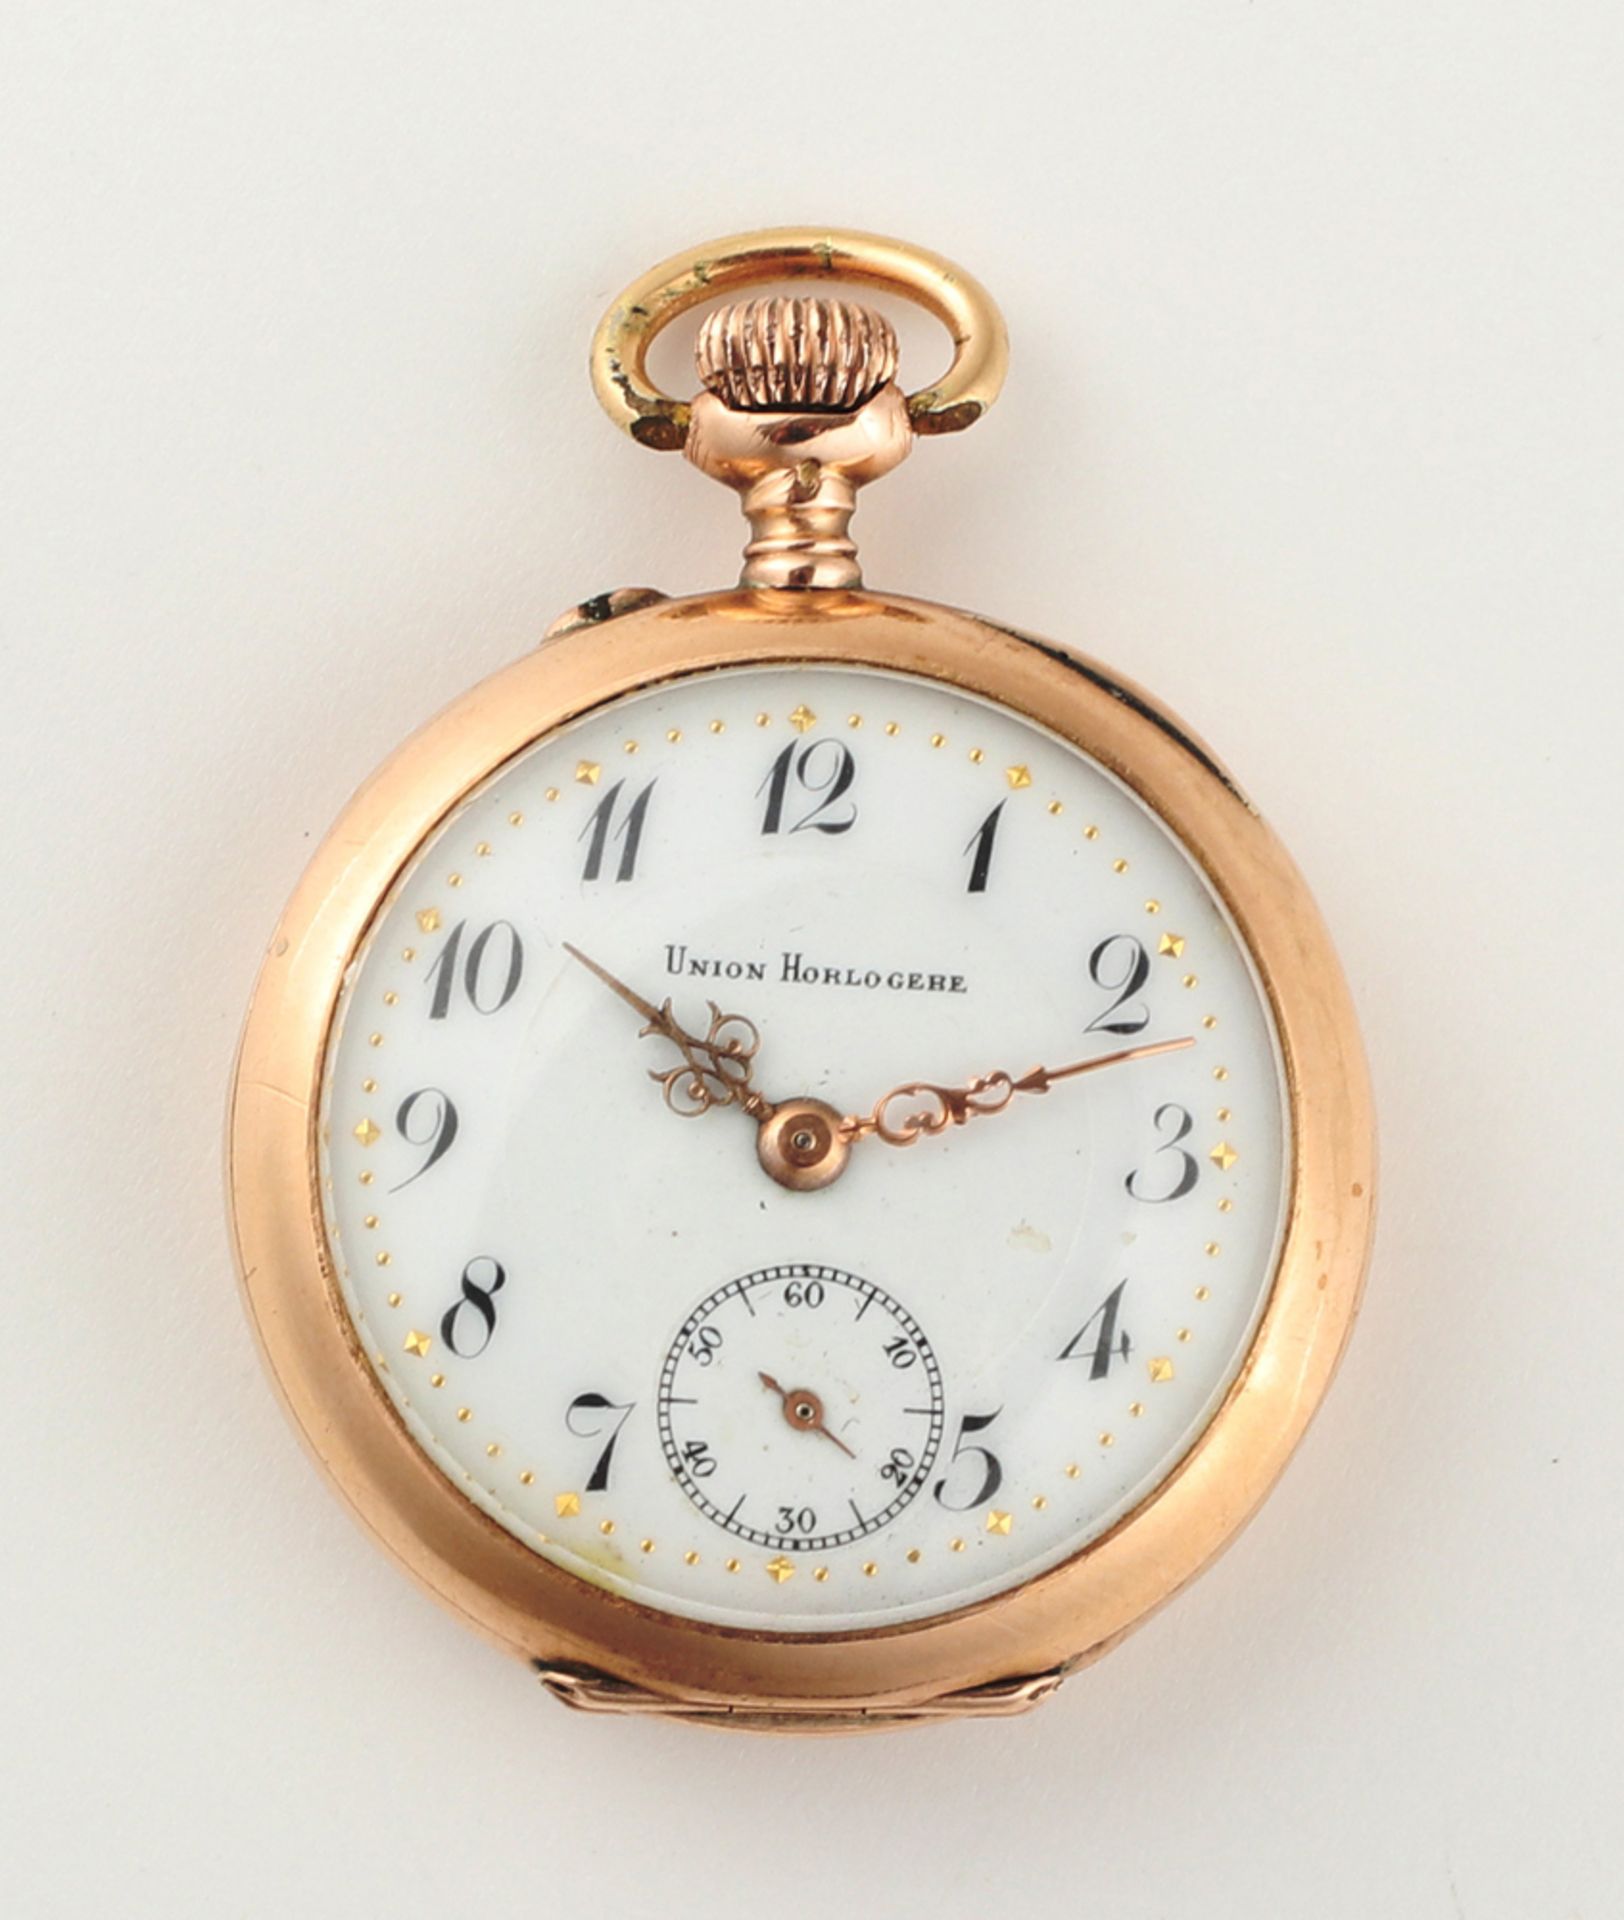 Damentaschenuhr, Union Horloger